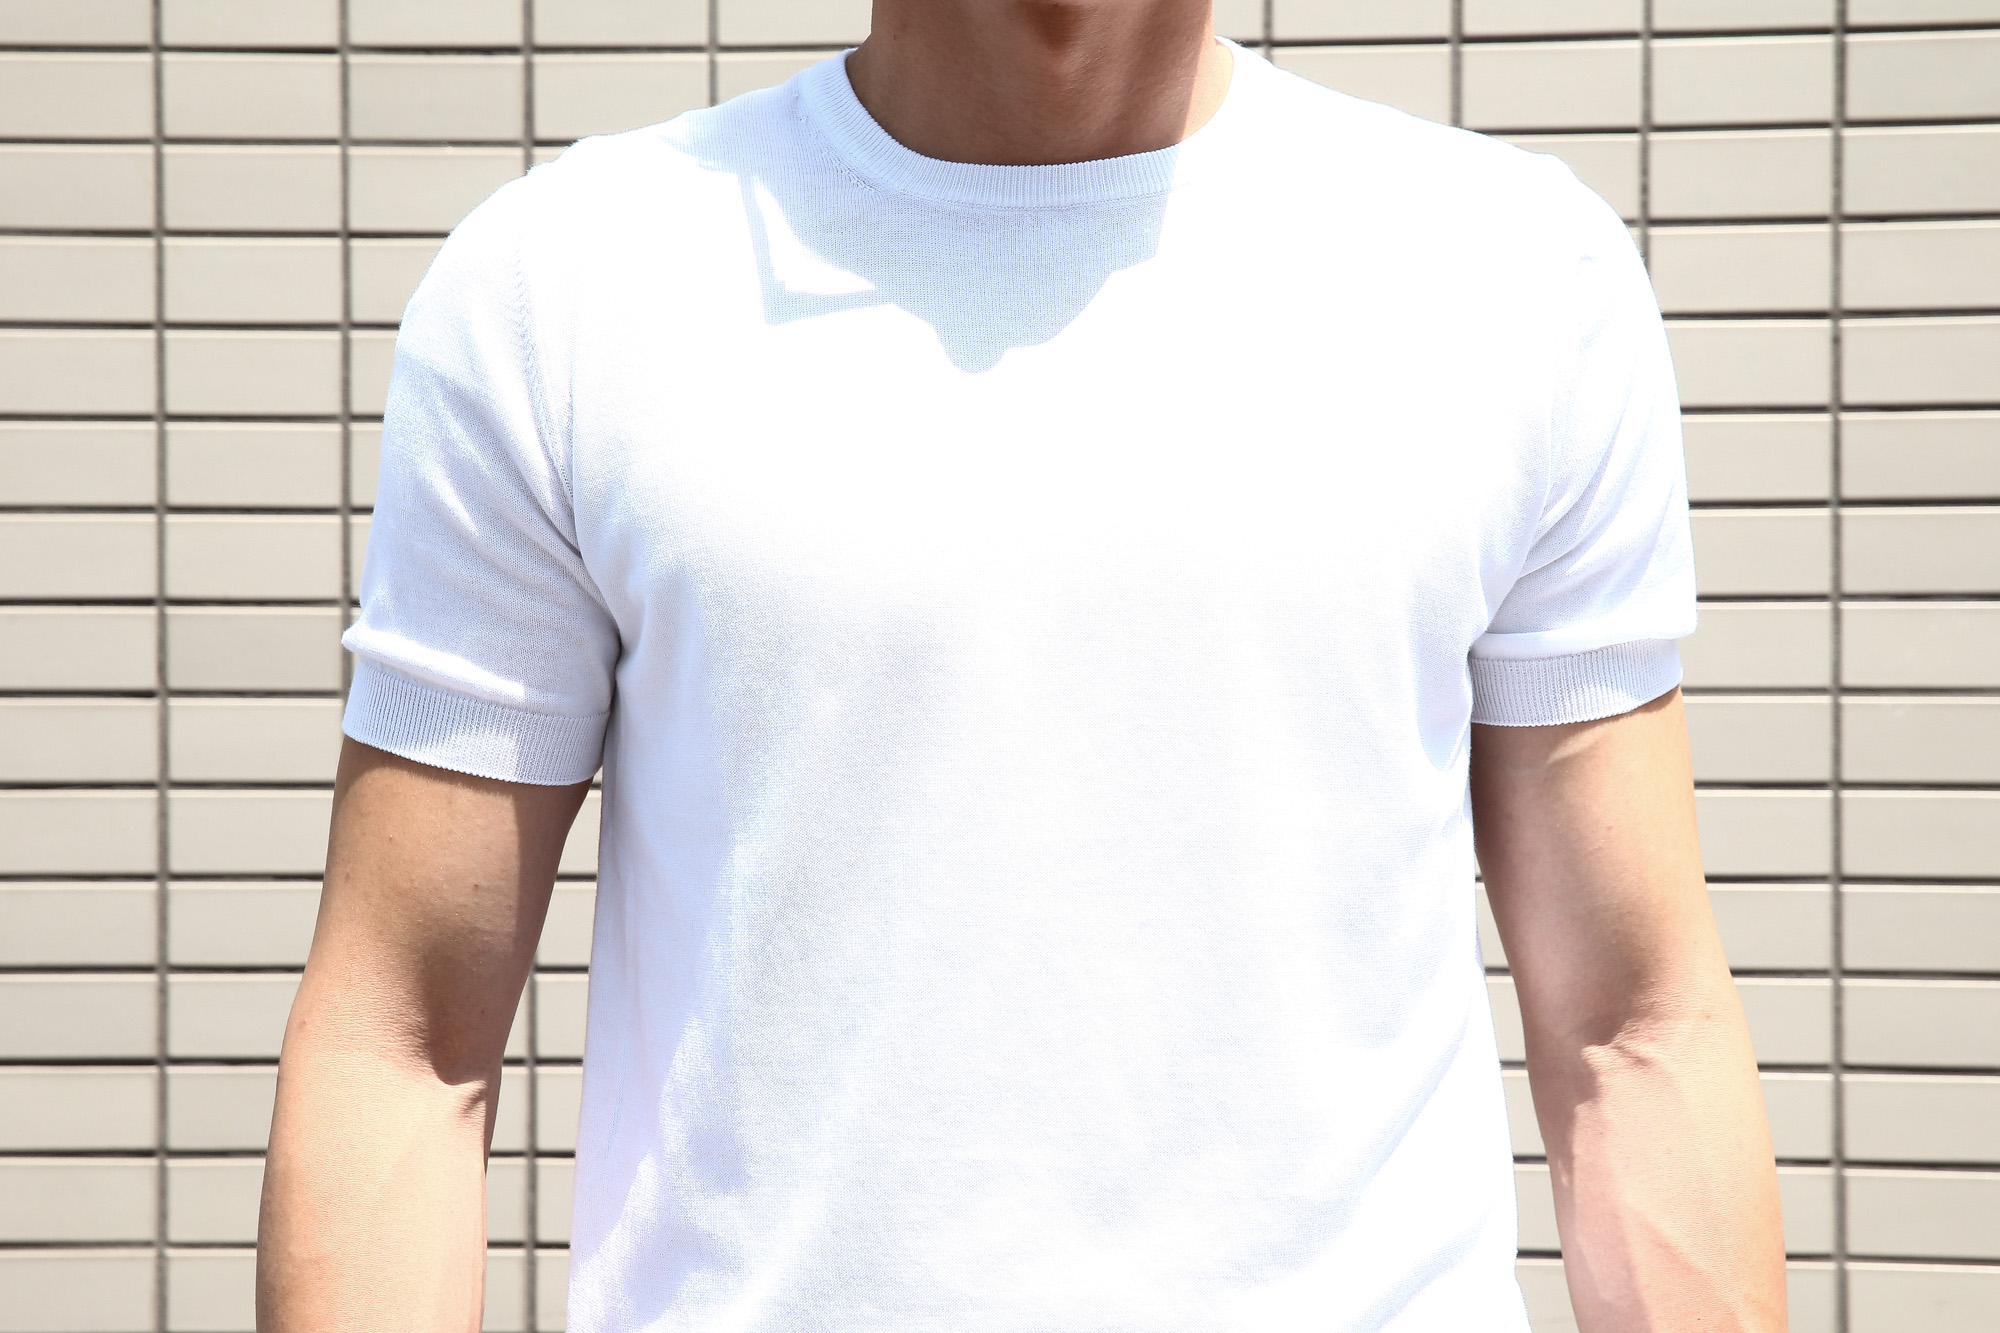 Gran Sasso (グランサッソ) Fresh Cotton T-shirt (フレッシュコットン Tシャツ) FRESH COTTON (フレッシュコットン) コットン ニット Tシャツ WHITE (ホワイト・002) made in italy (イタリア製) 2018 春夏新作 gransasso 愛知 名古屋 Alto e Diritto アルト エ デリット ニットTee